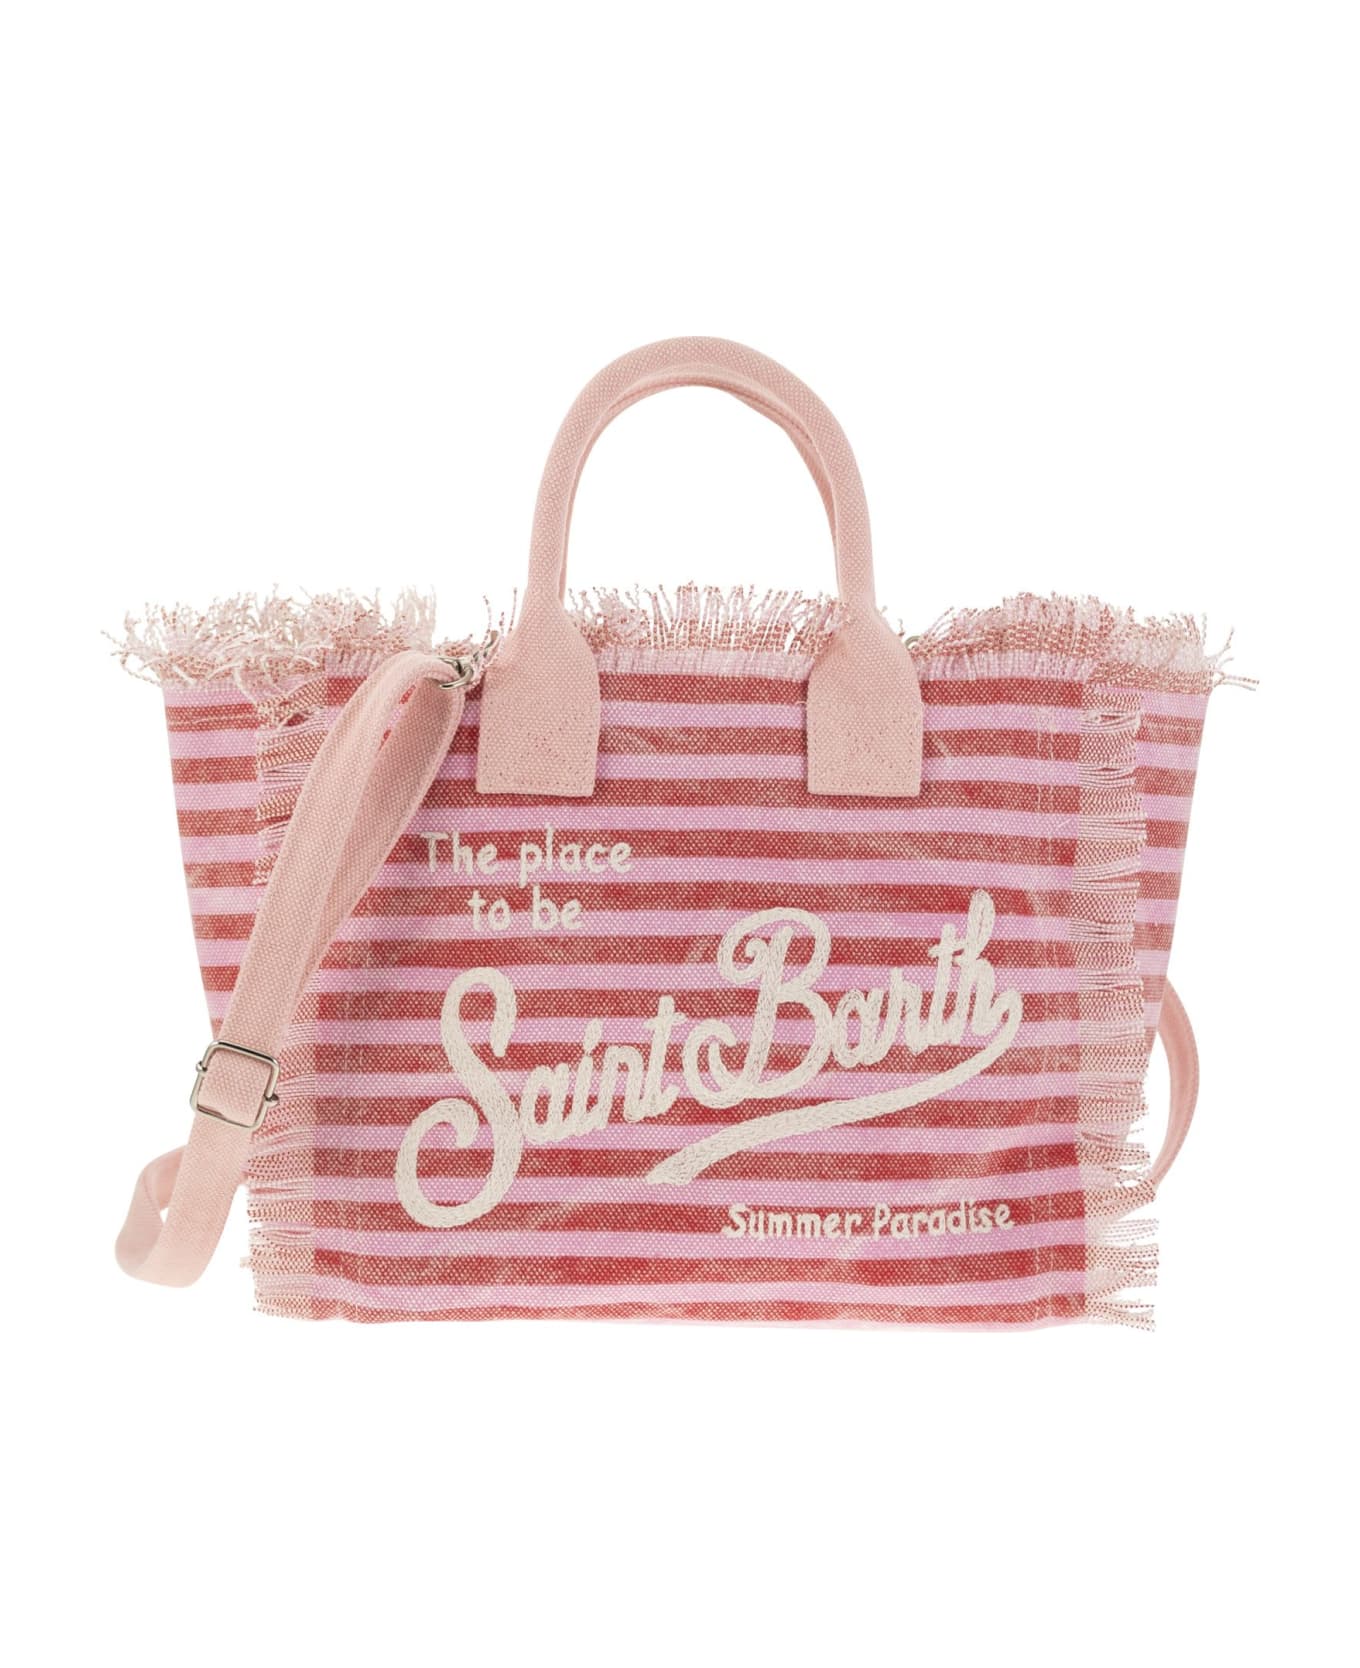 MC2 Saint Barth Colette - Striped Patterned Handbag - Pink